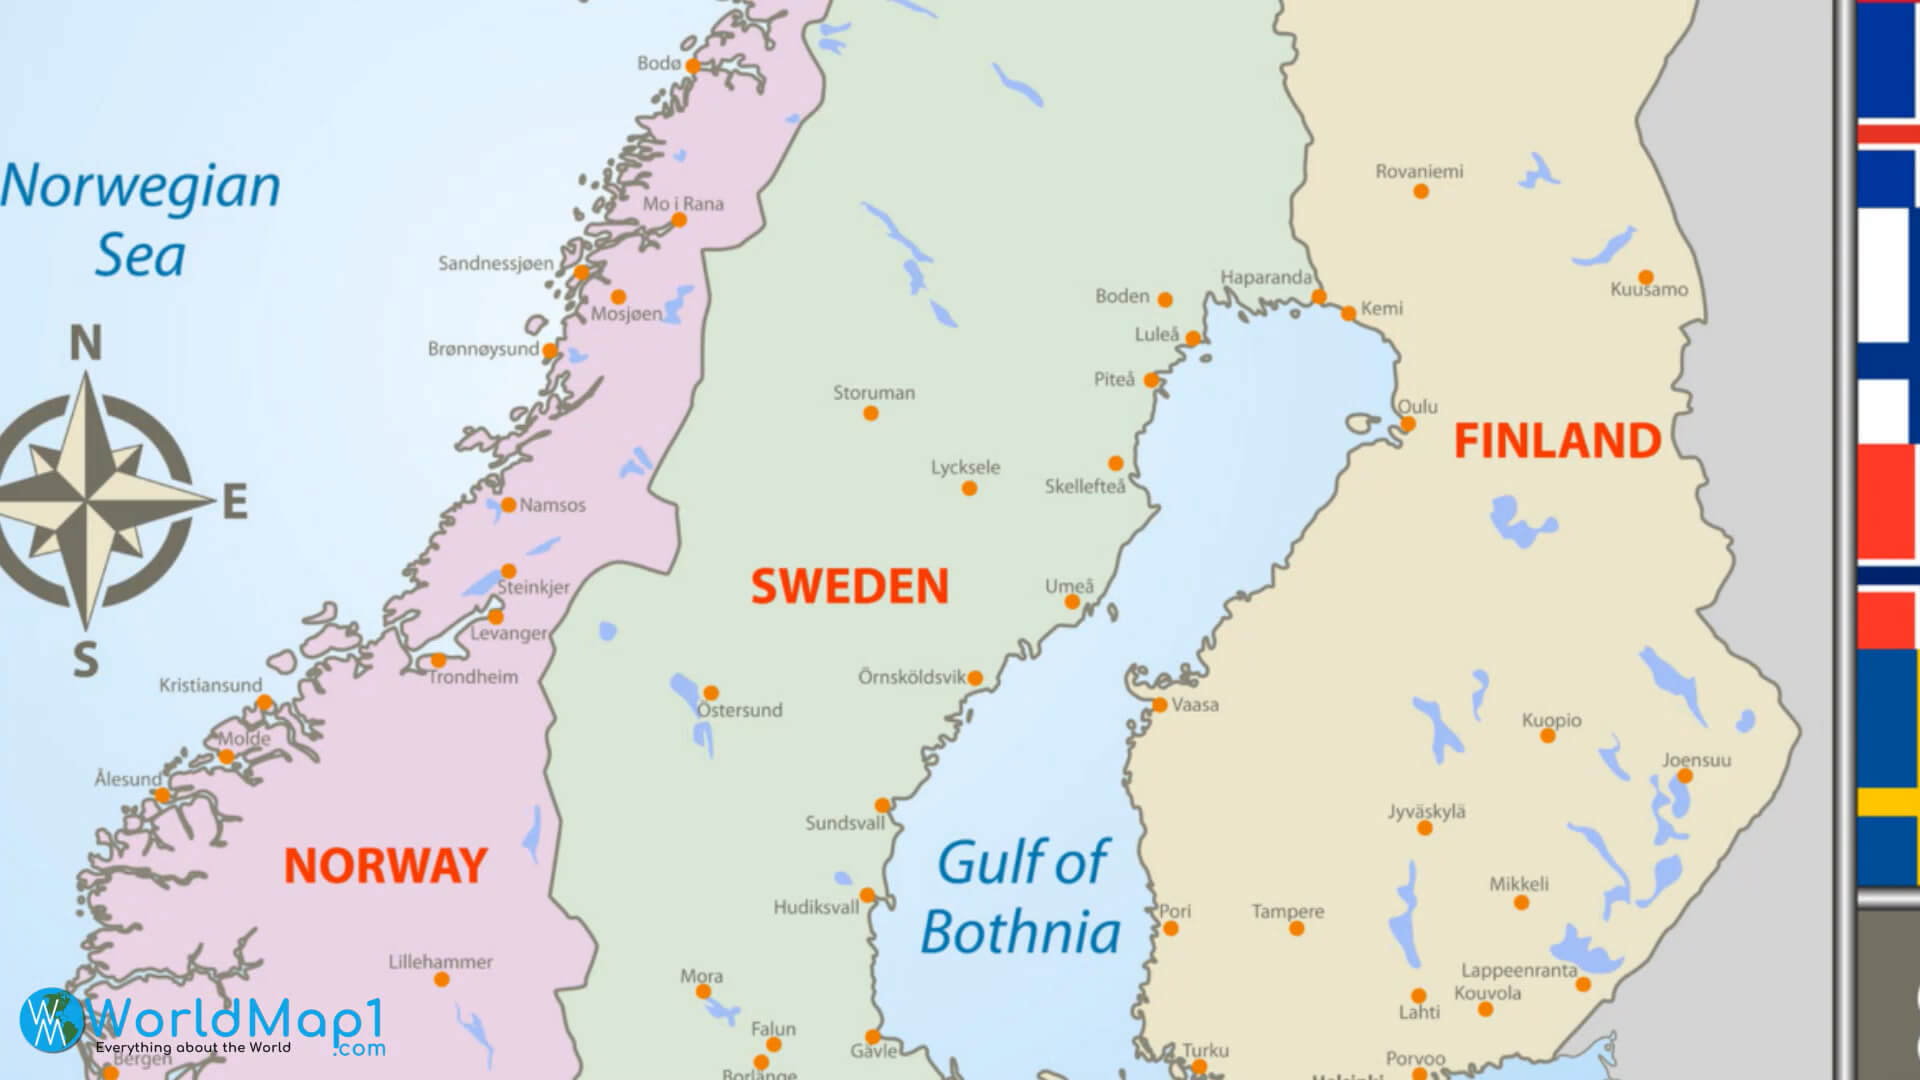 Norwegian Sea Cities Map with Sweden Cities